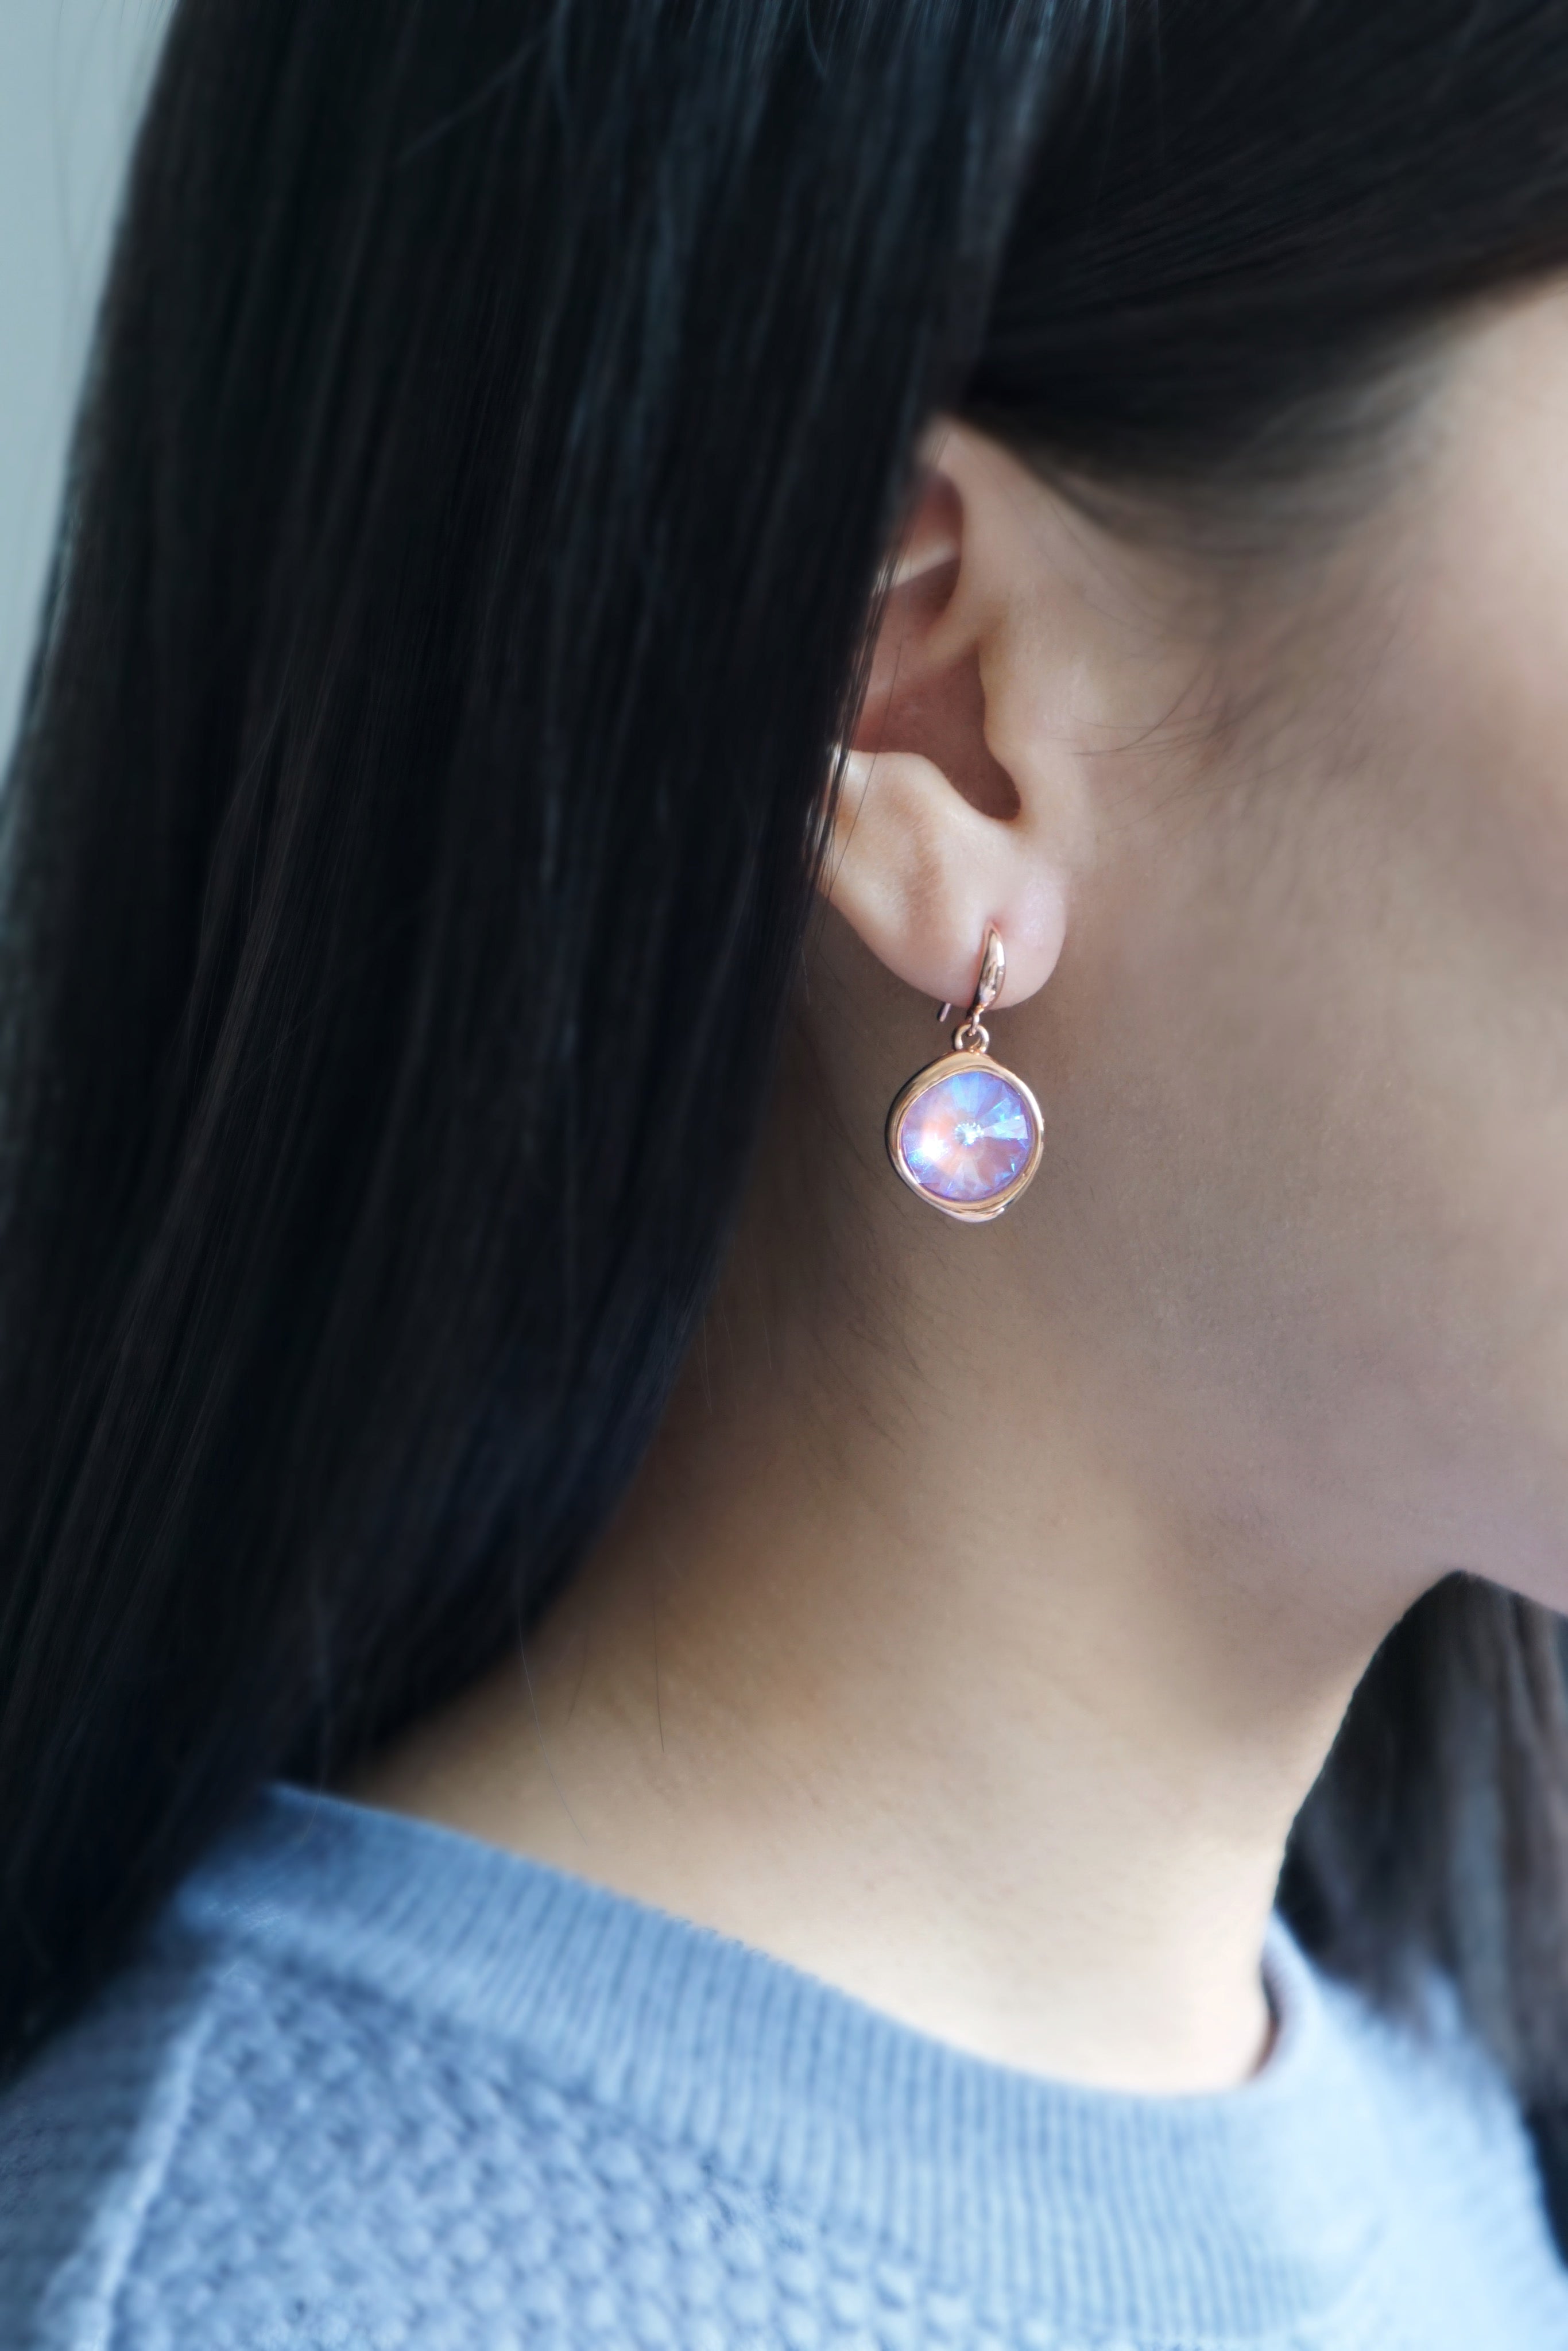 Tallulah Earrings in Rose Gold - Lavender Delite